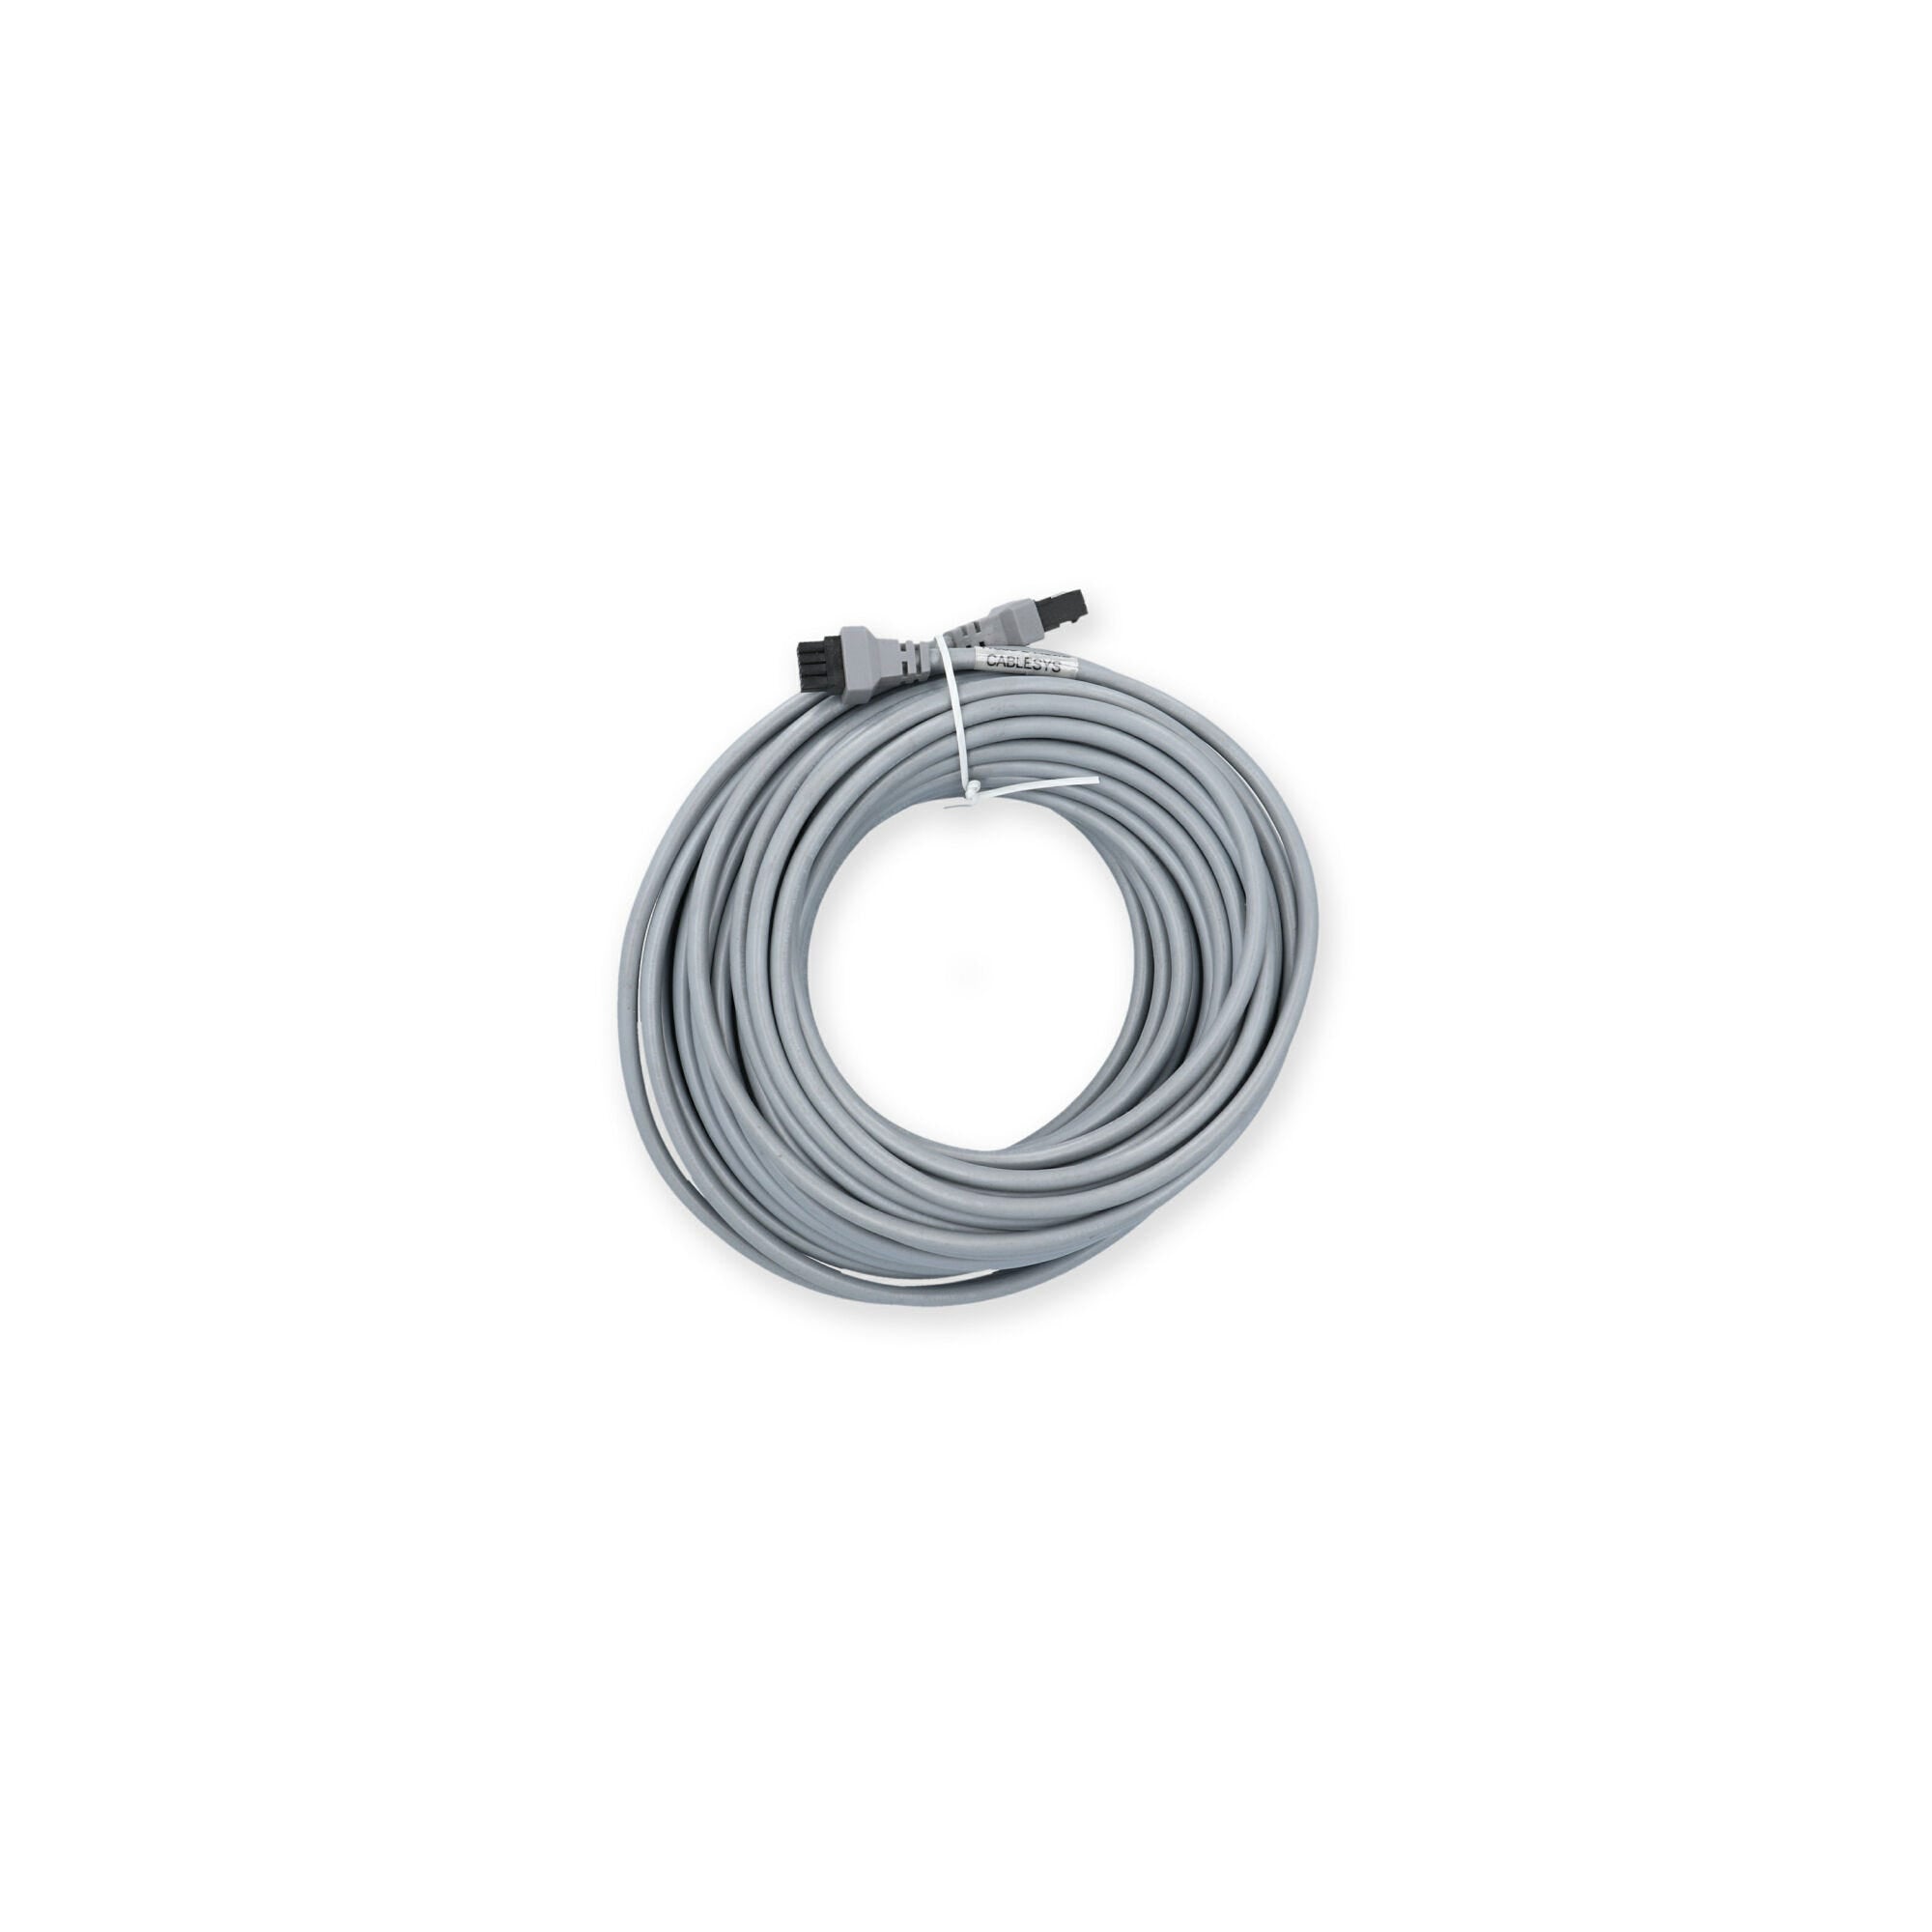 Balboa 8-Pin Molex Cable Extension [50 Feet] (11588-2)